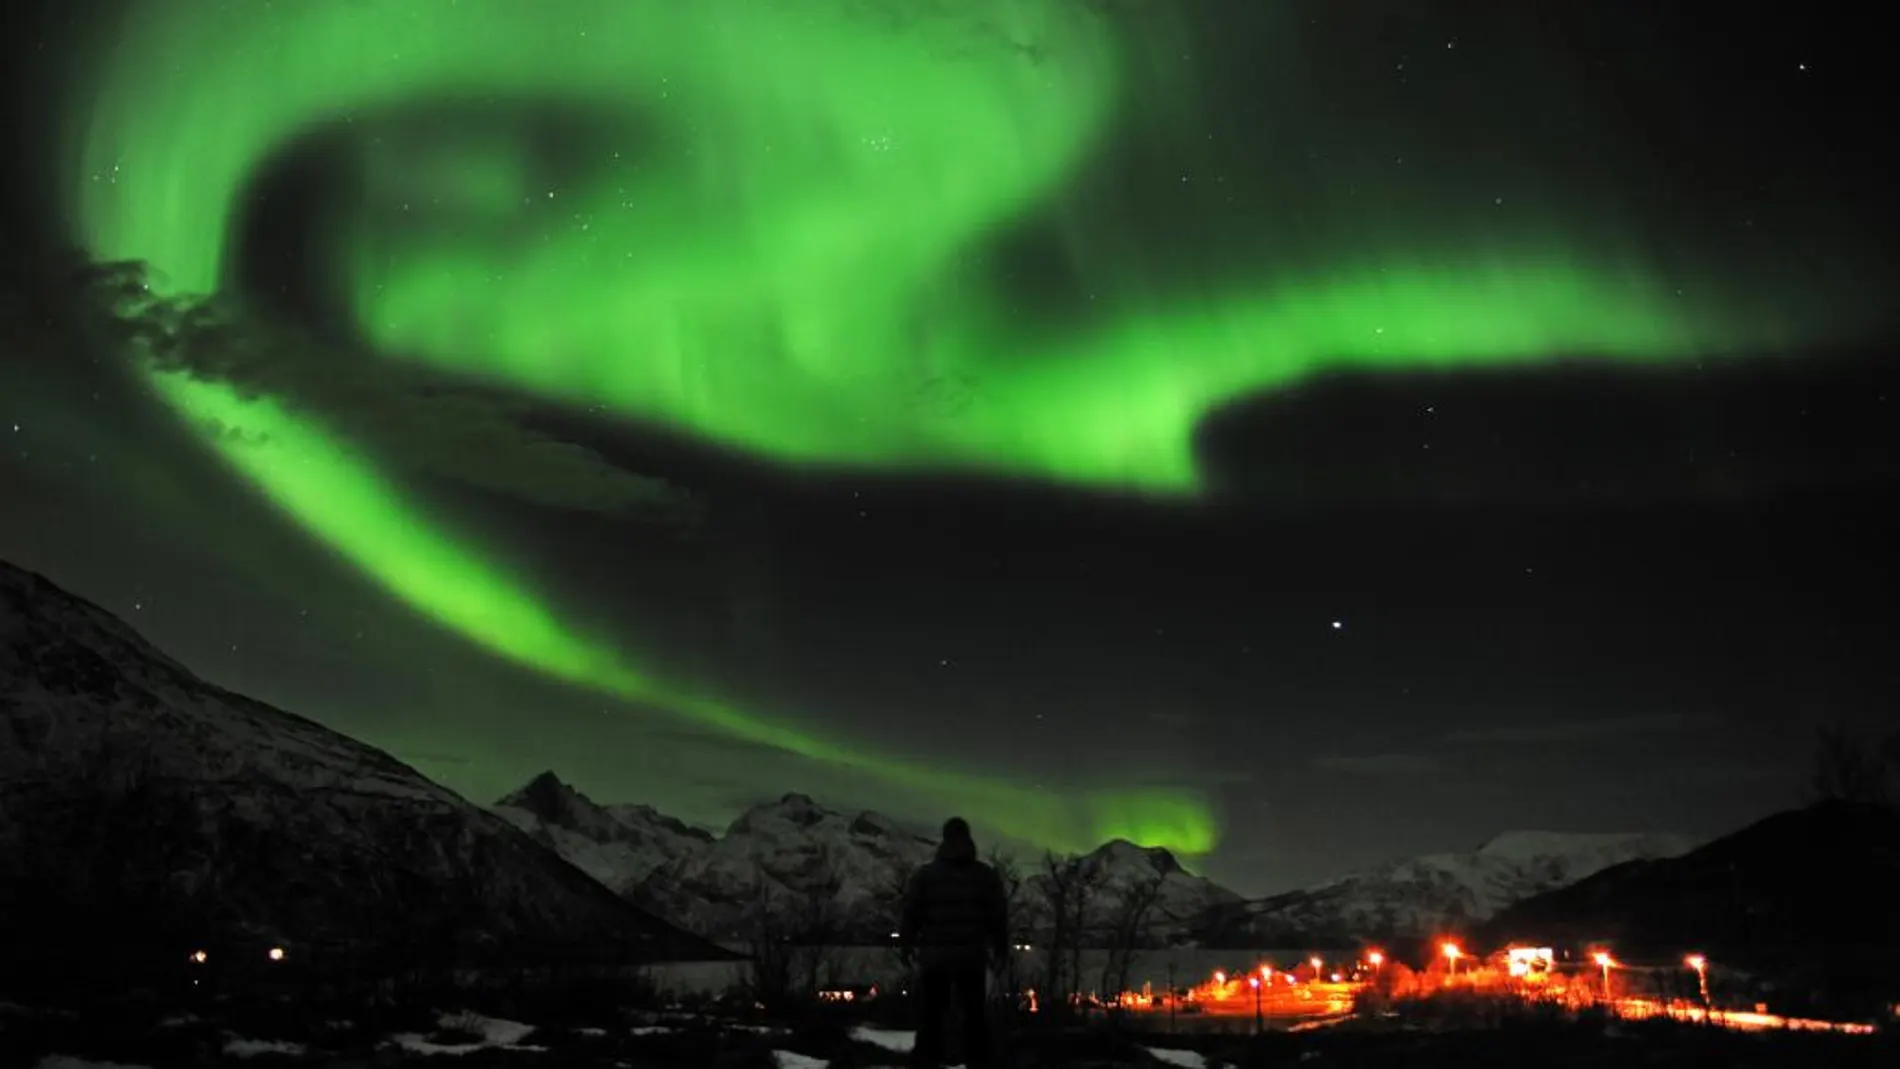 Las auroras boreales, como esta espectacular sobre el cielo de Noruega, están causadas por la reconexión magnética